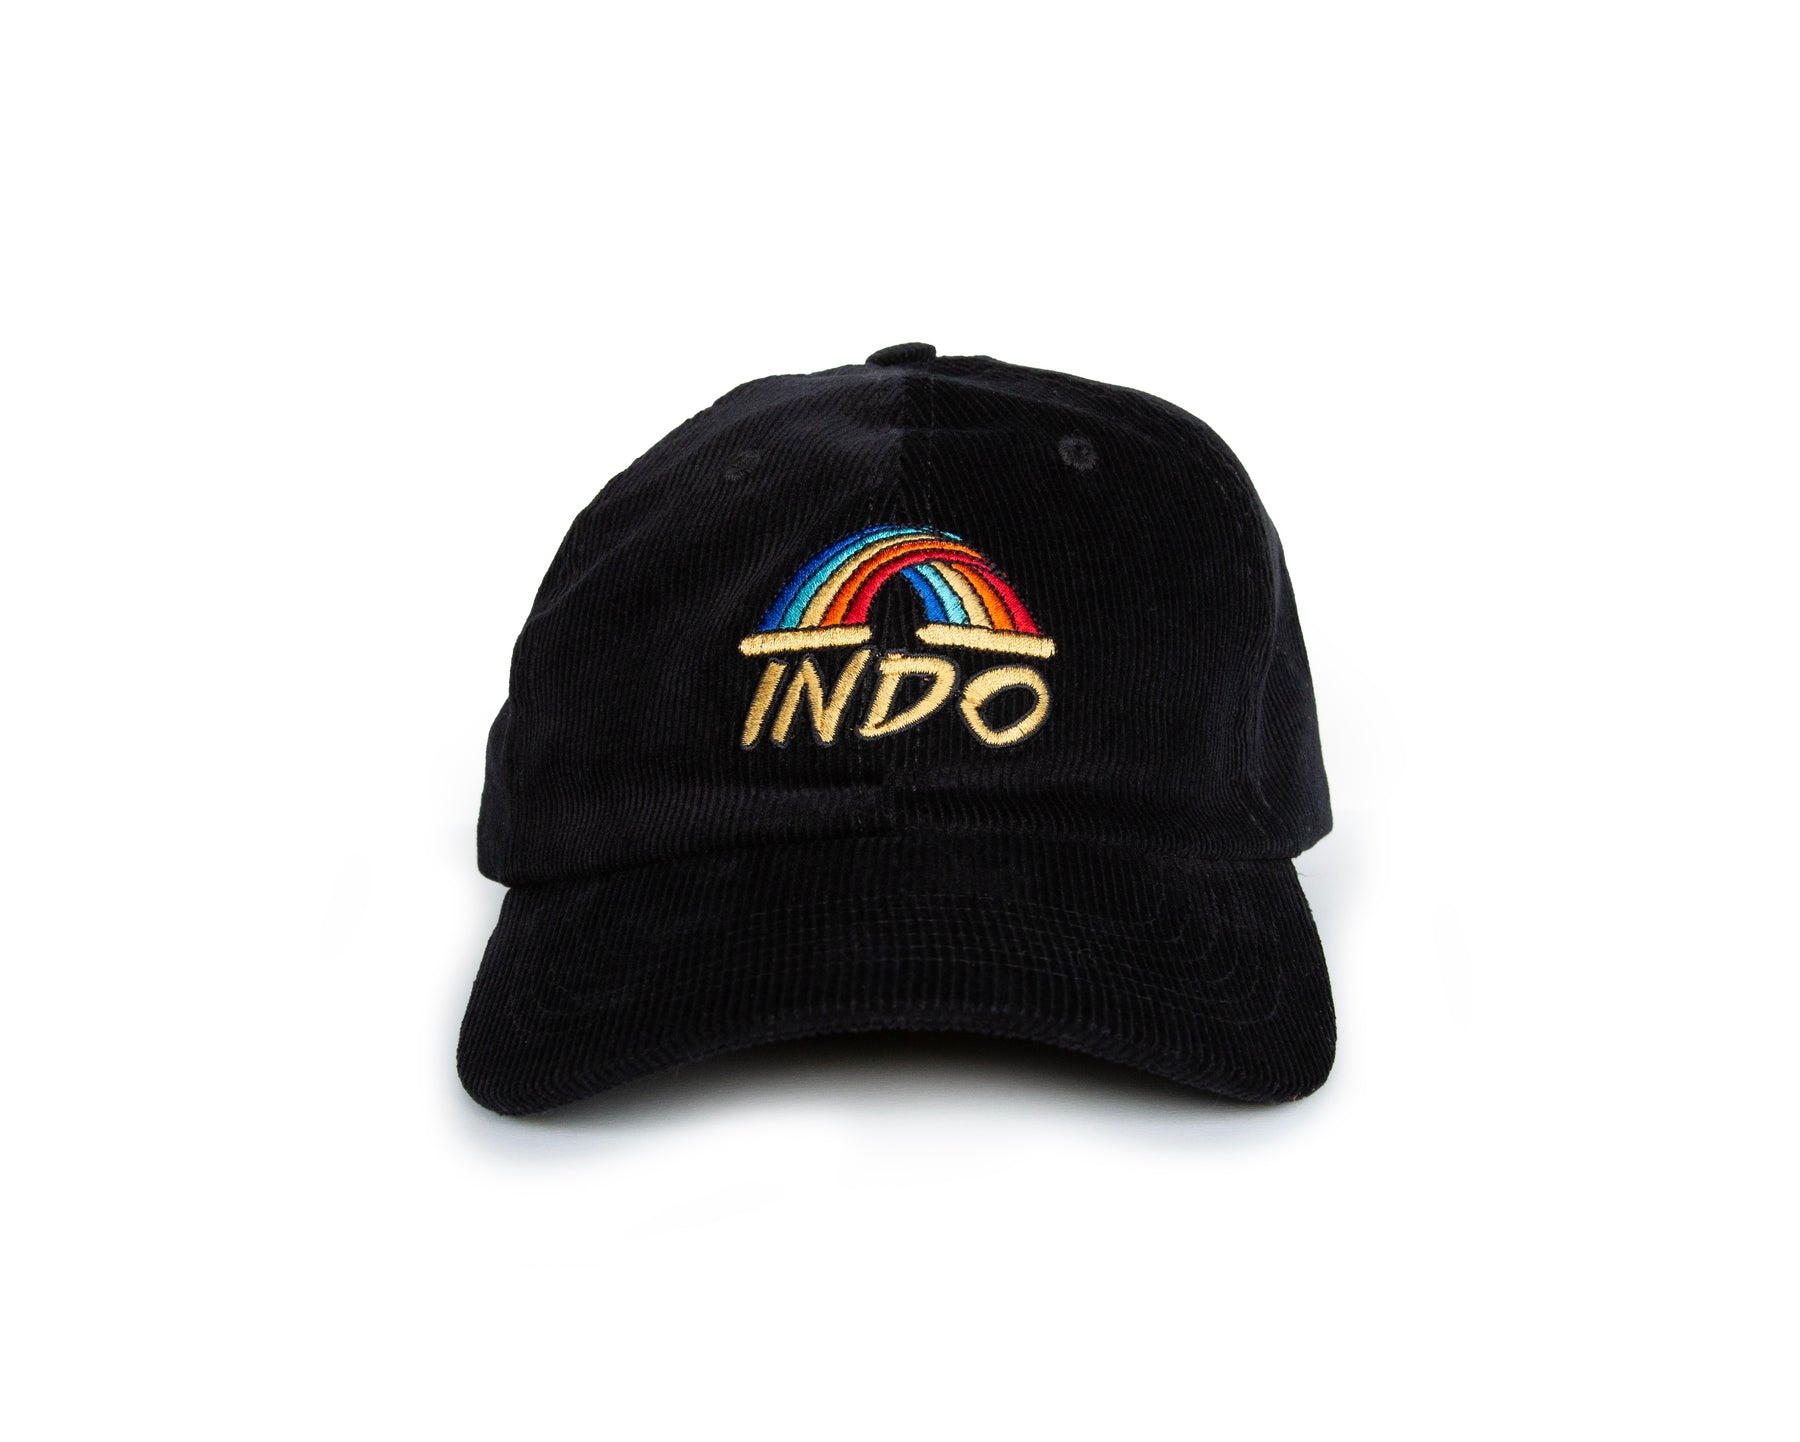 Indo Corduroy Hat - Black